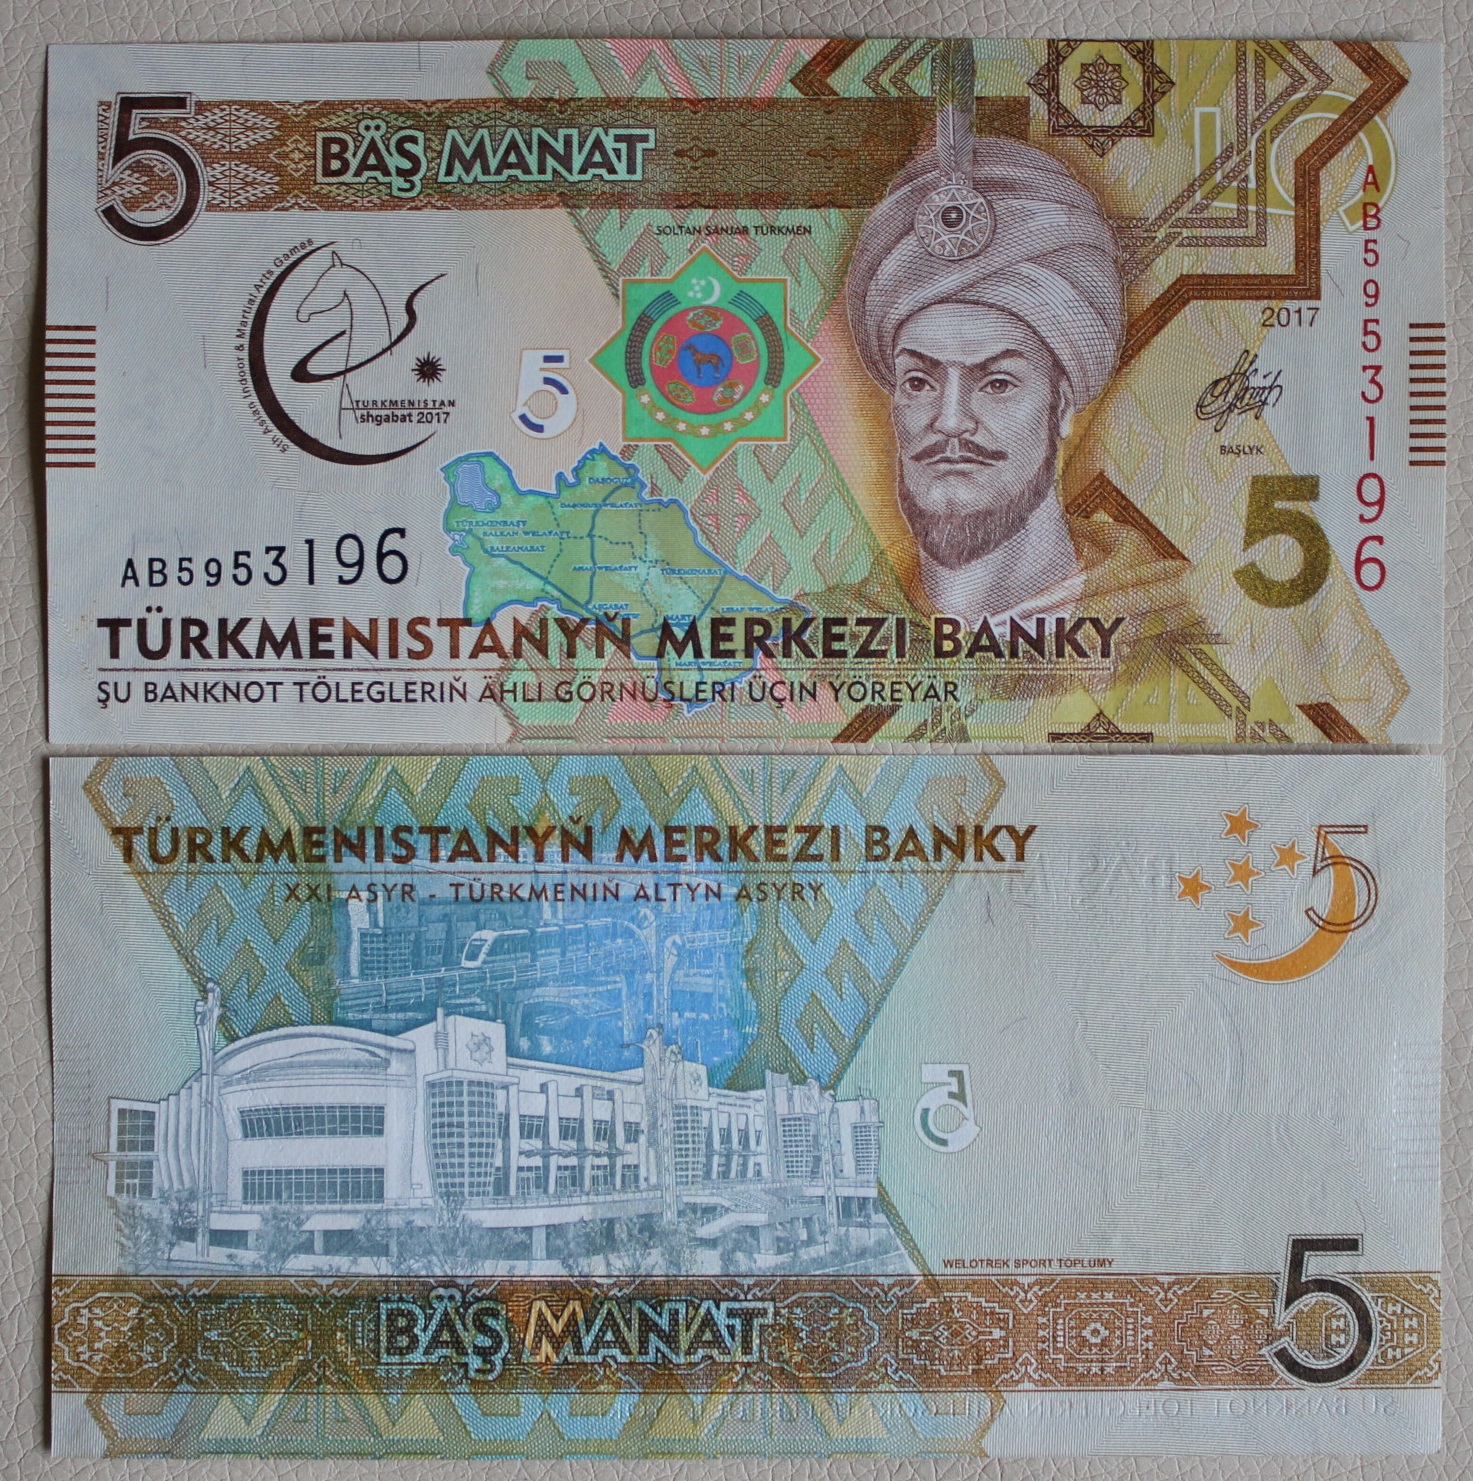 200 манат в рублях на сегодня. Банкноты Туркмении 5 манат. 1 Манат Туркменистан. Банкнота туркменский манат. Современные банкноты Туркменистана.